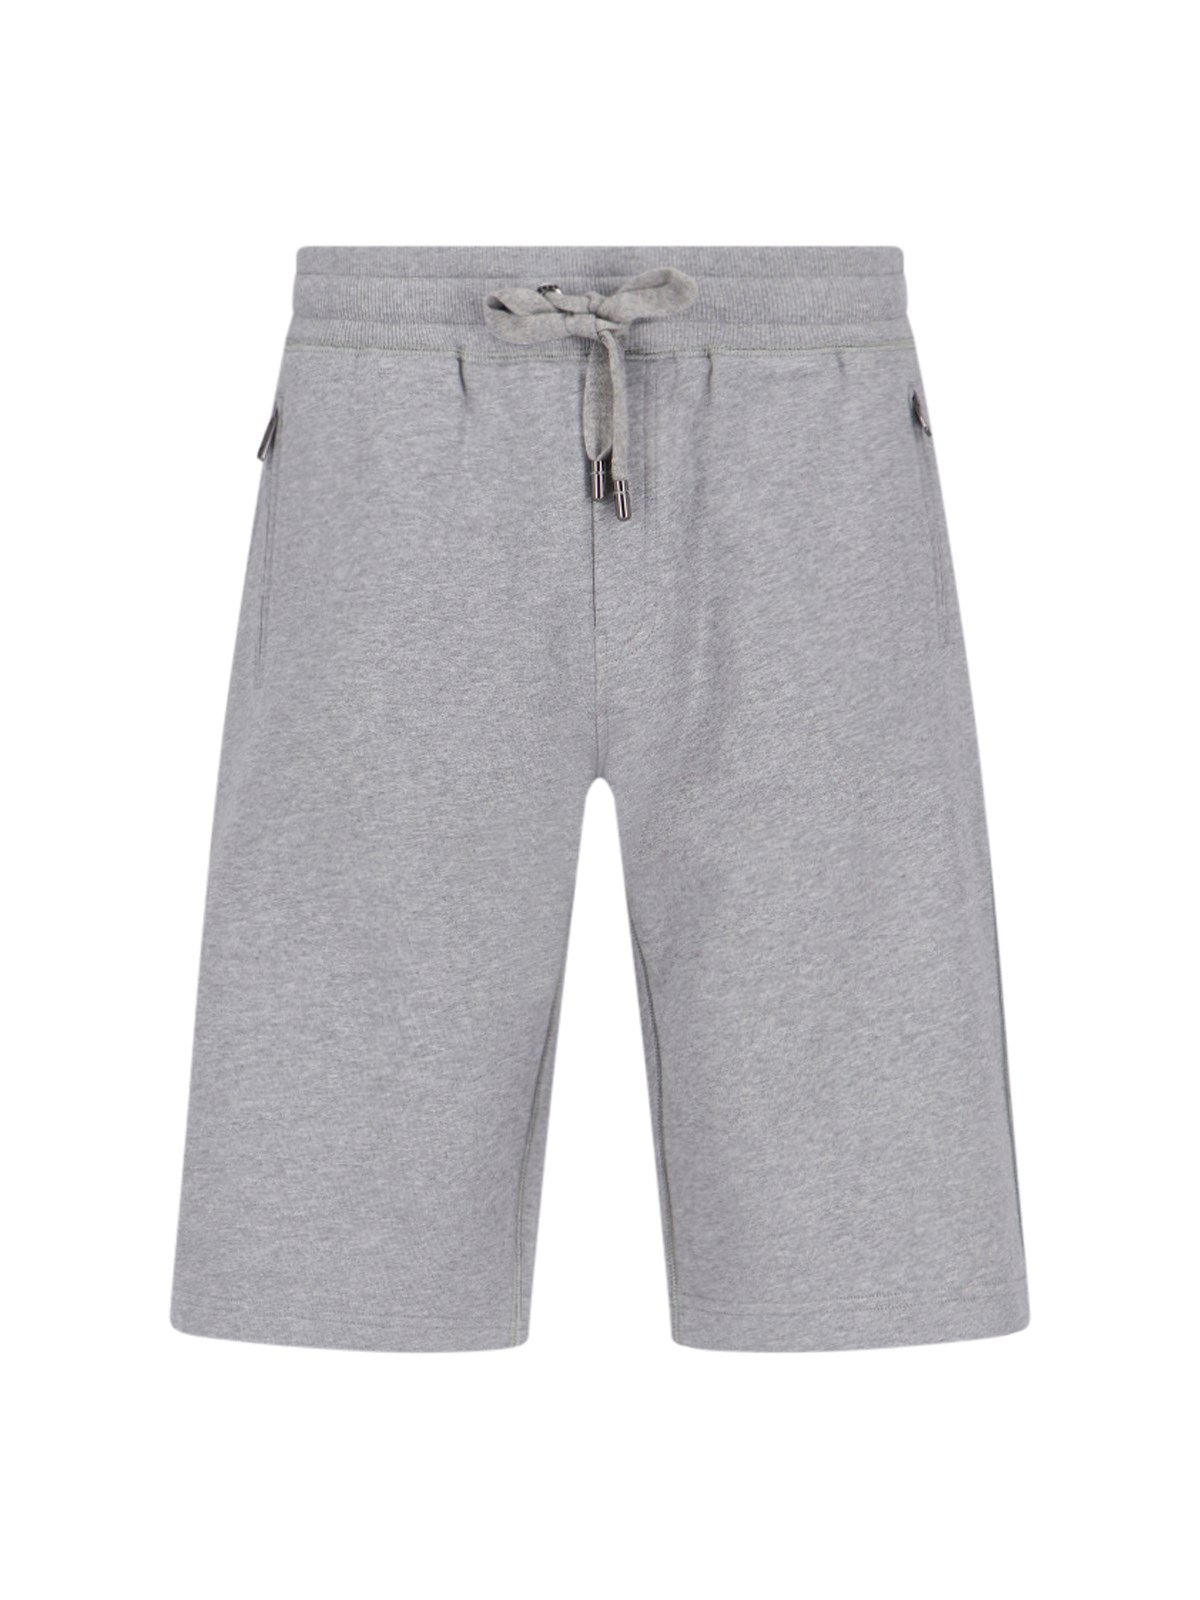 Dolce & Gabbana Sports Shorts In Grey